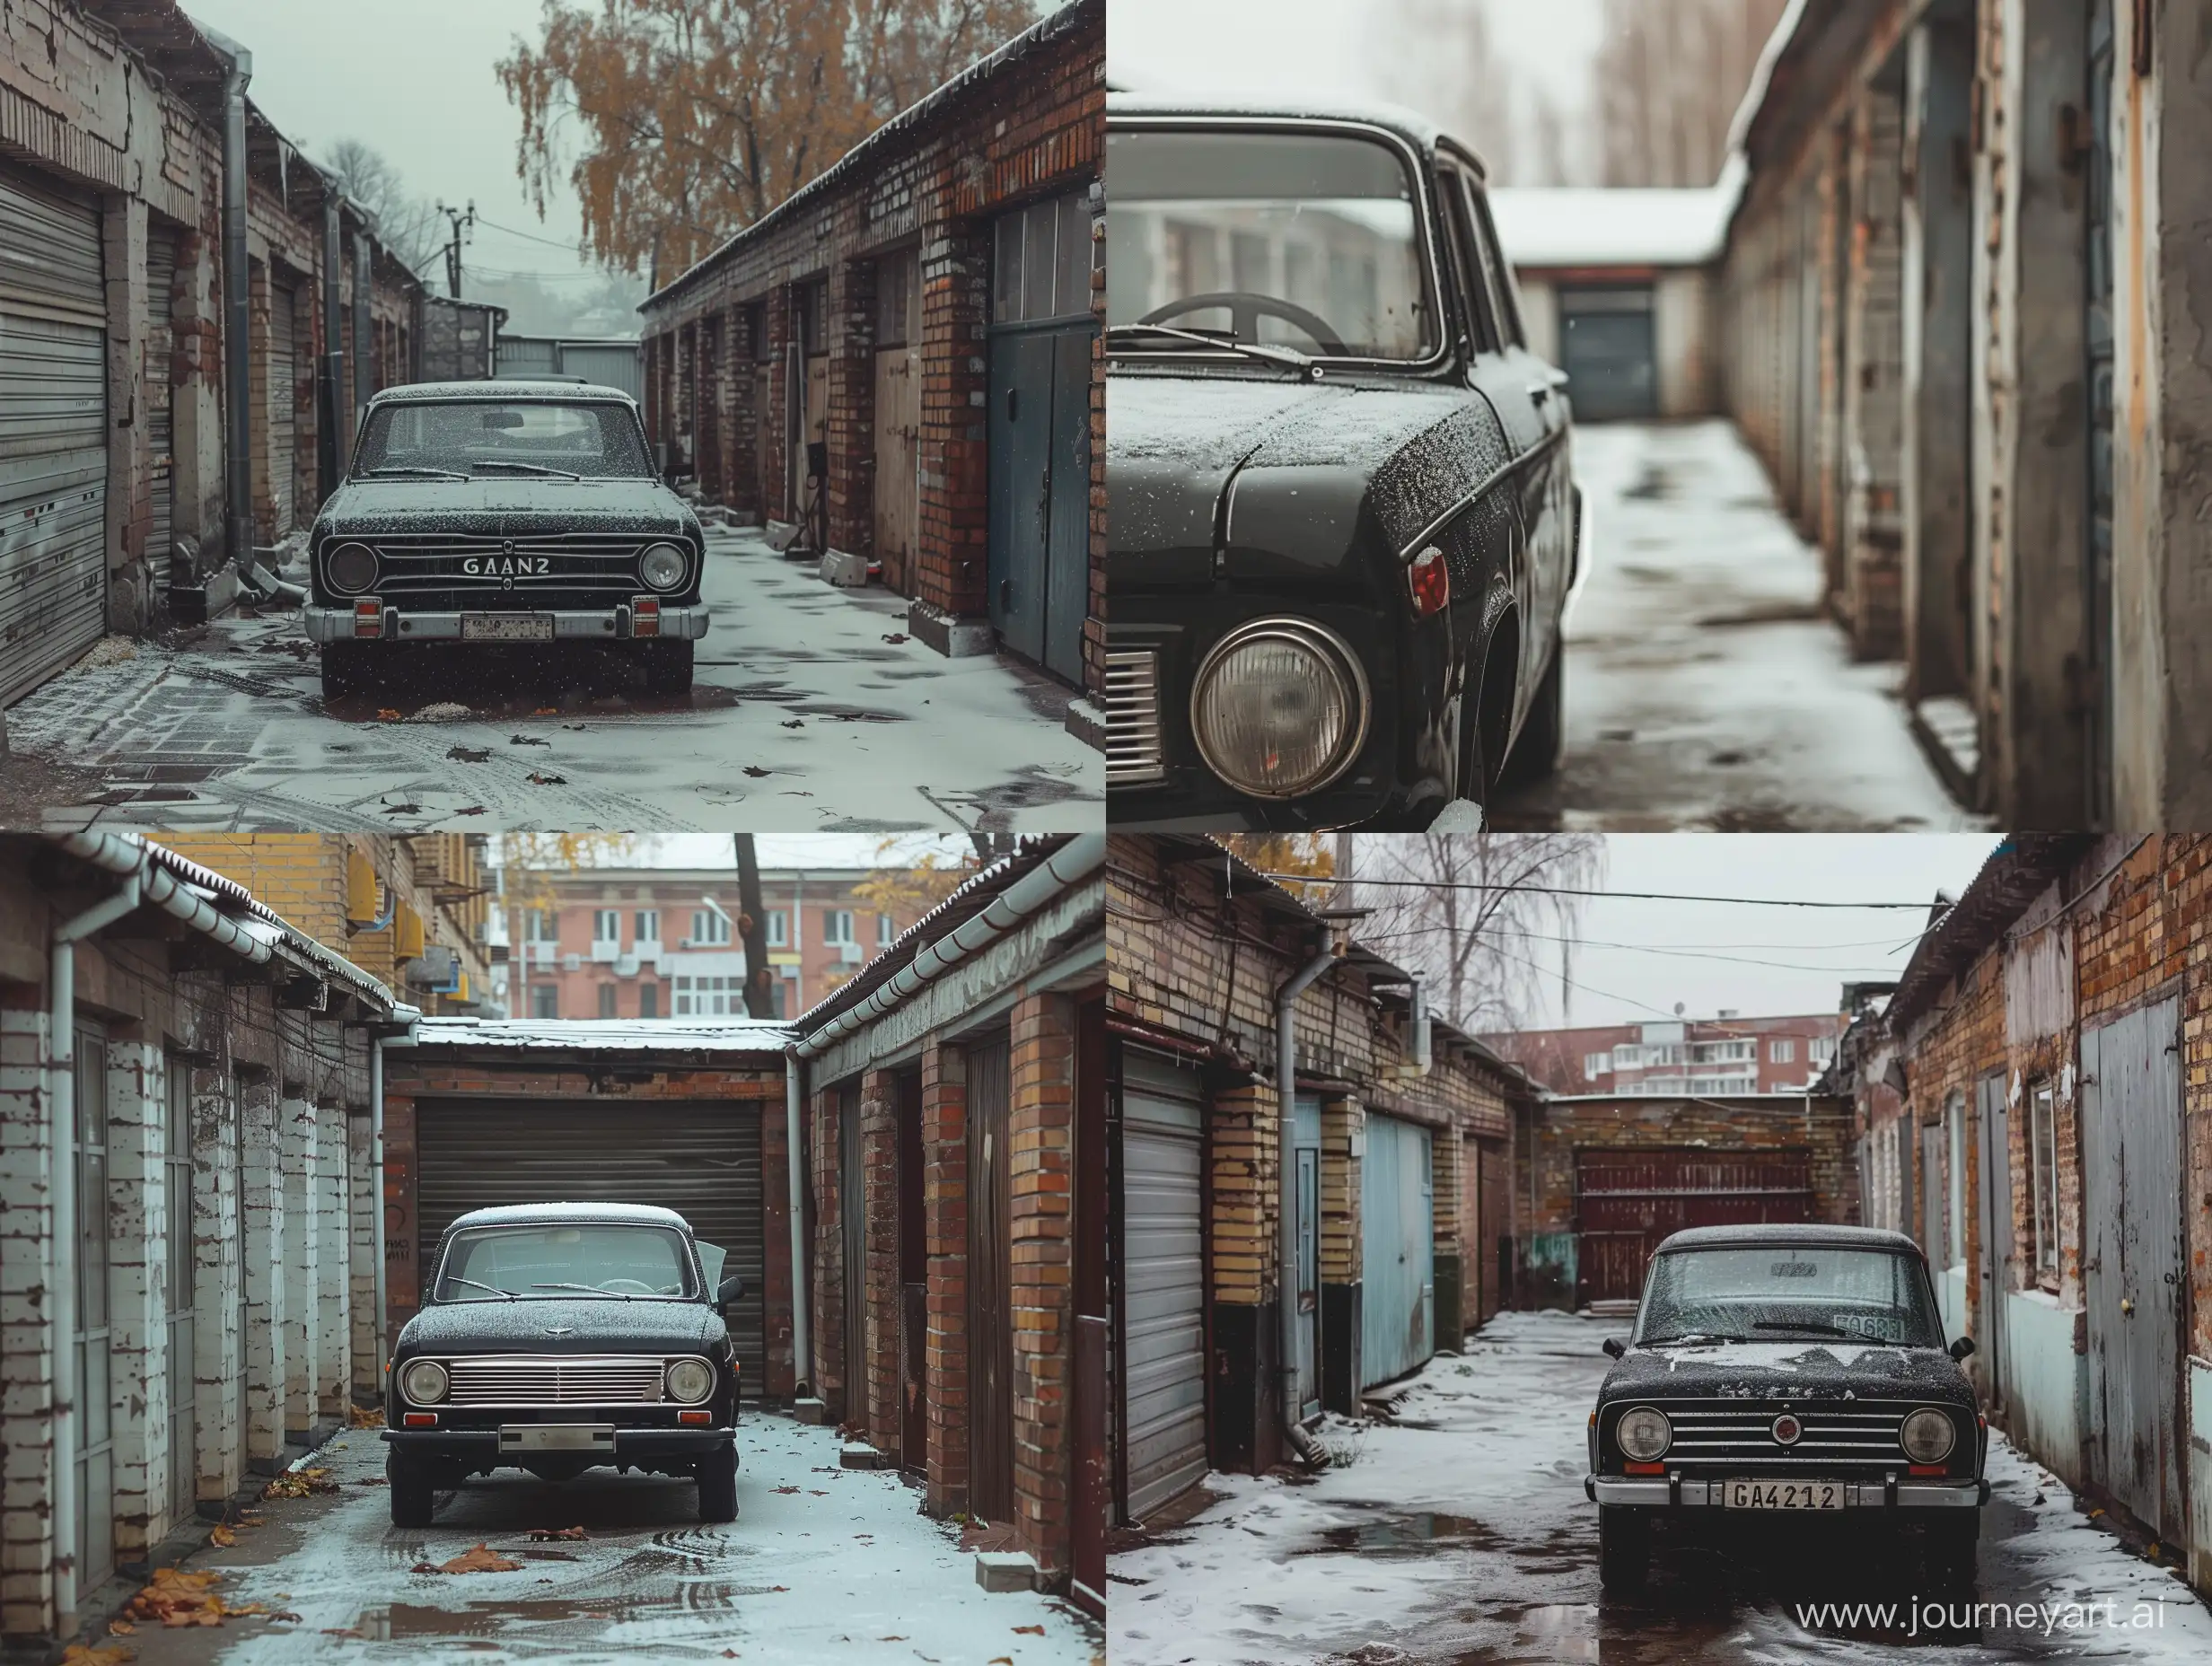  Гаражный кооператив в провинциальном российском городе поздней осенью. Слякоть, легкая изморозь. Бесконечный ряд гаражей. В одном из гаражей припаркована черный автомобиль газ-21